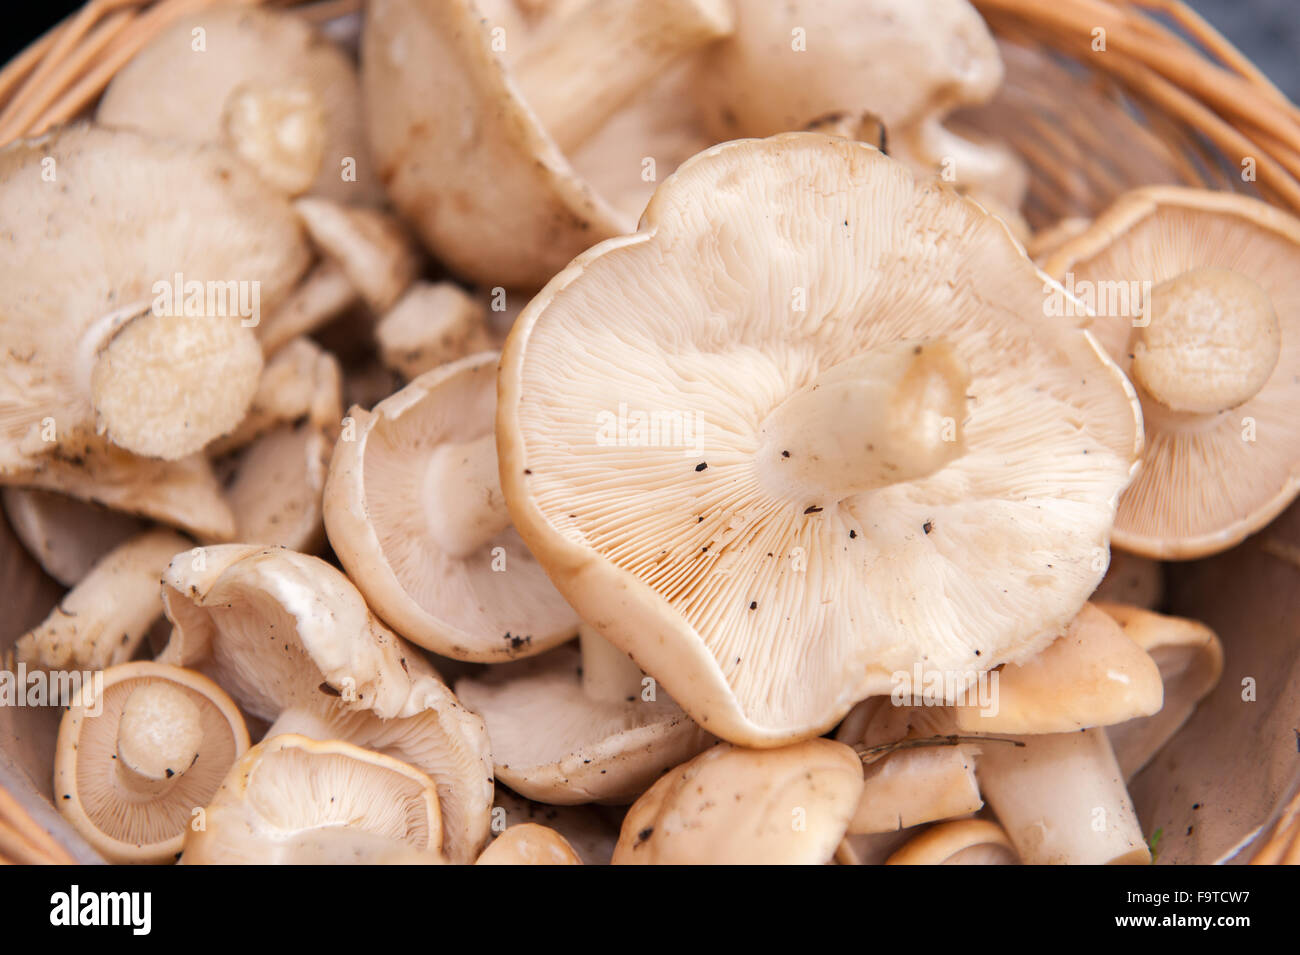 Large selection of fresh wild mushrooms Stock Photo